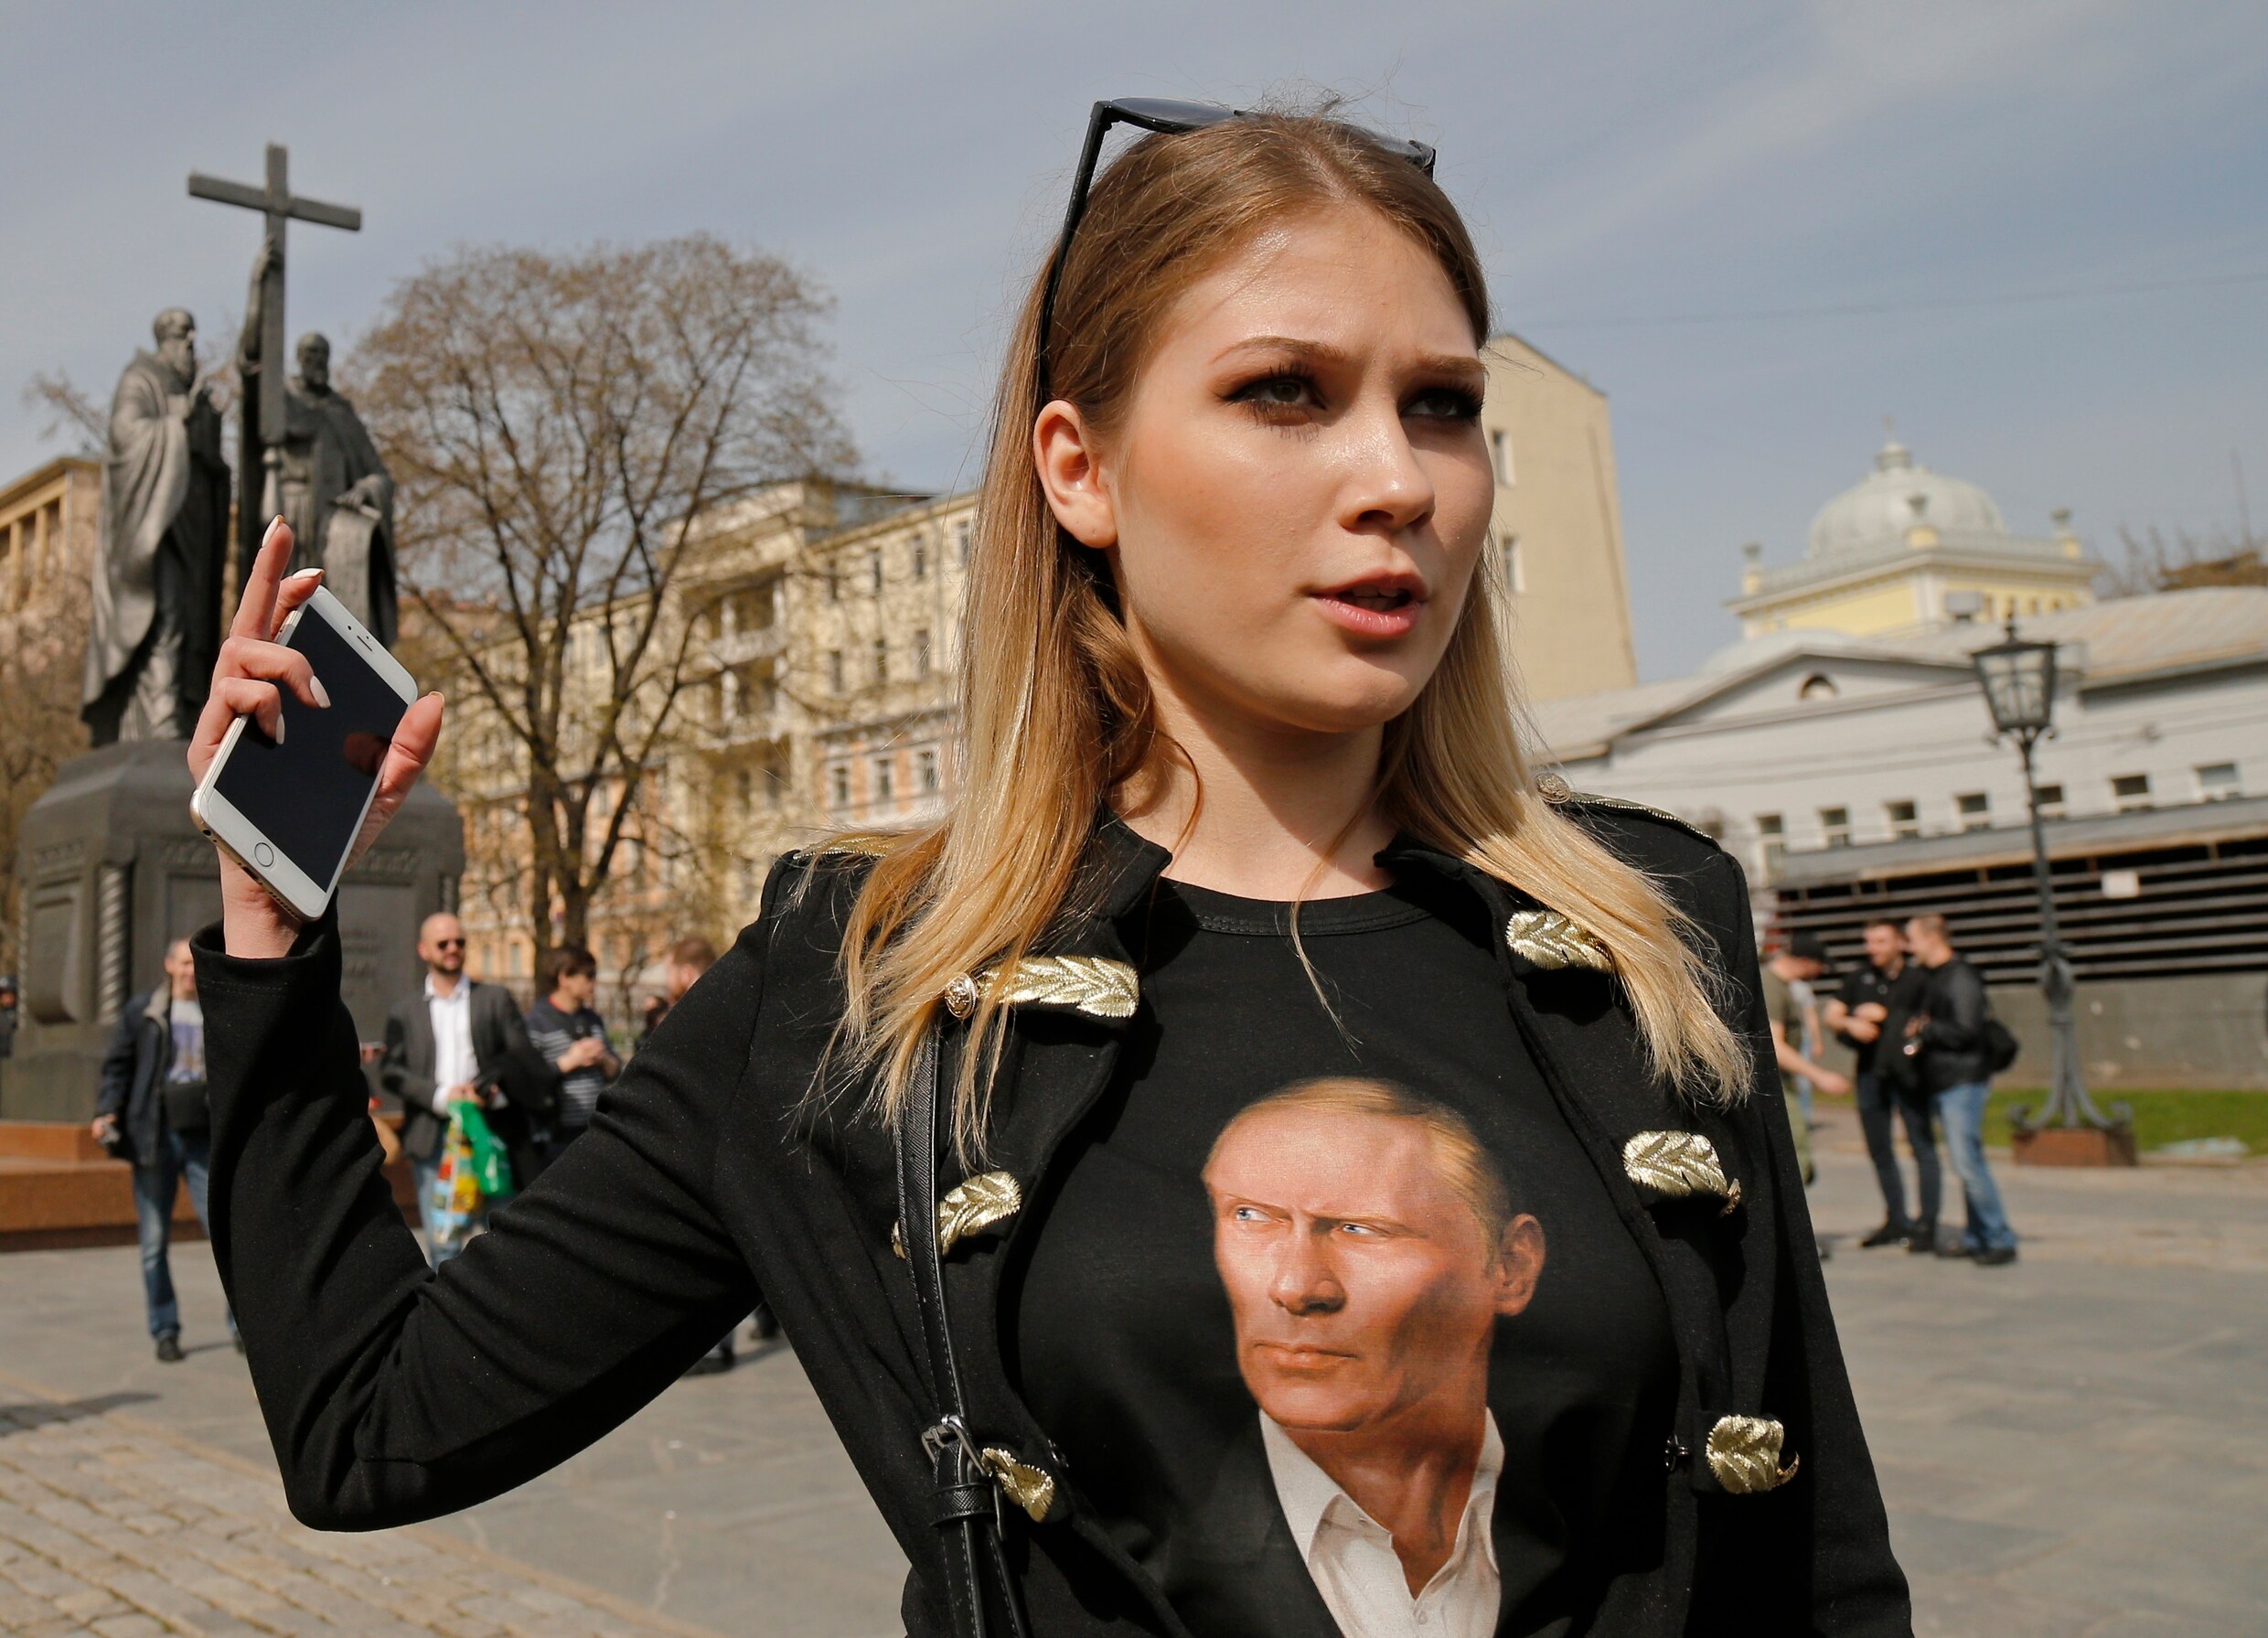 Honderden trotseren verbod om tegen Poetin te demonstreren: "Wij zijn ziek van hem"